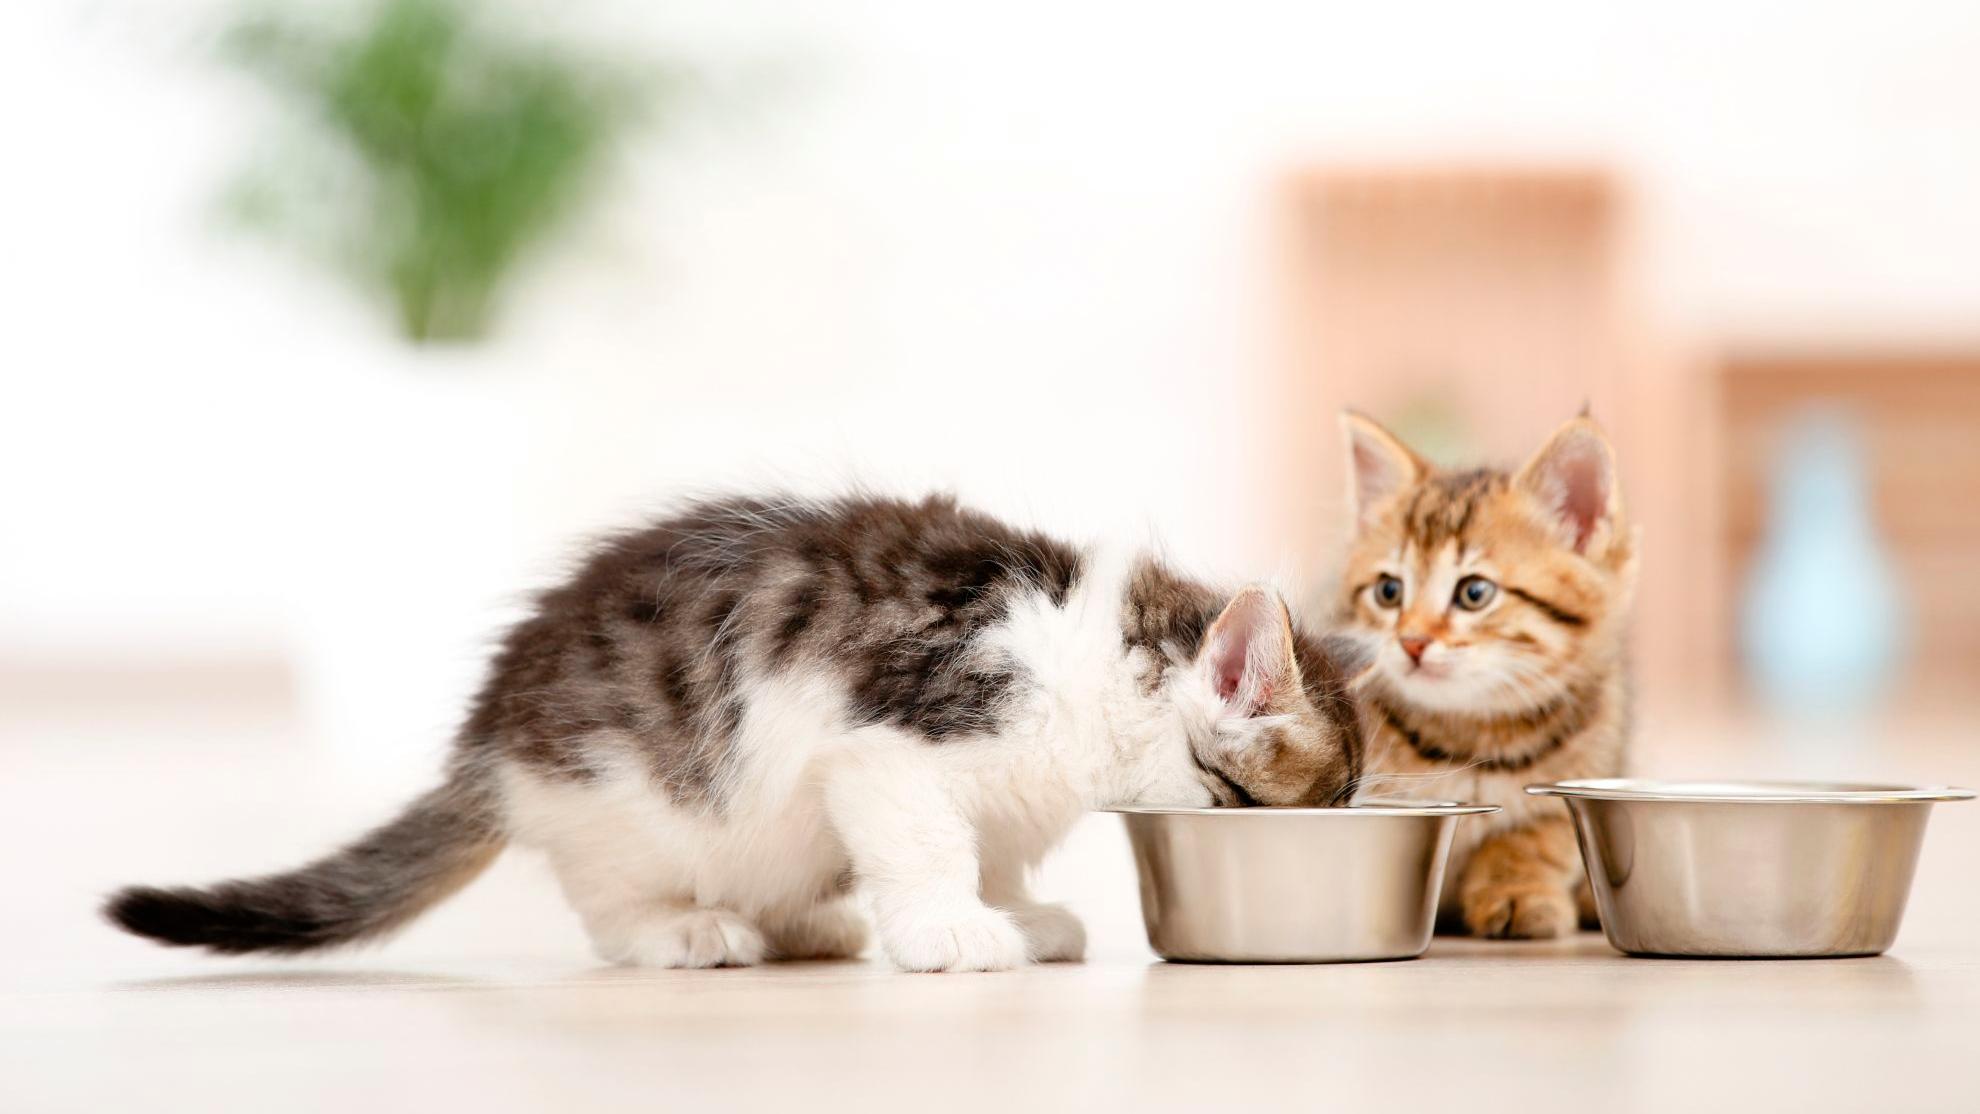 Twee kittens eten uit een voerbakje binnenshuis